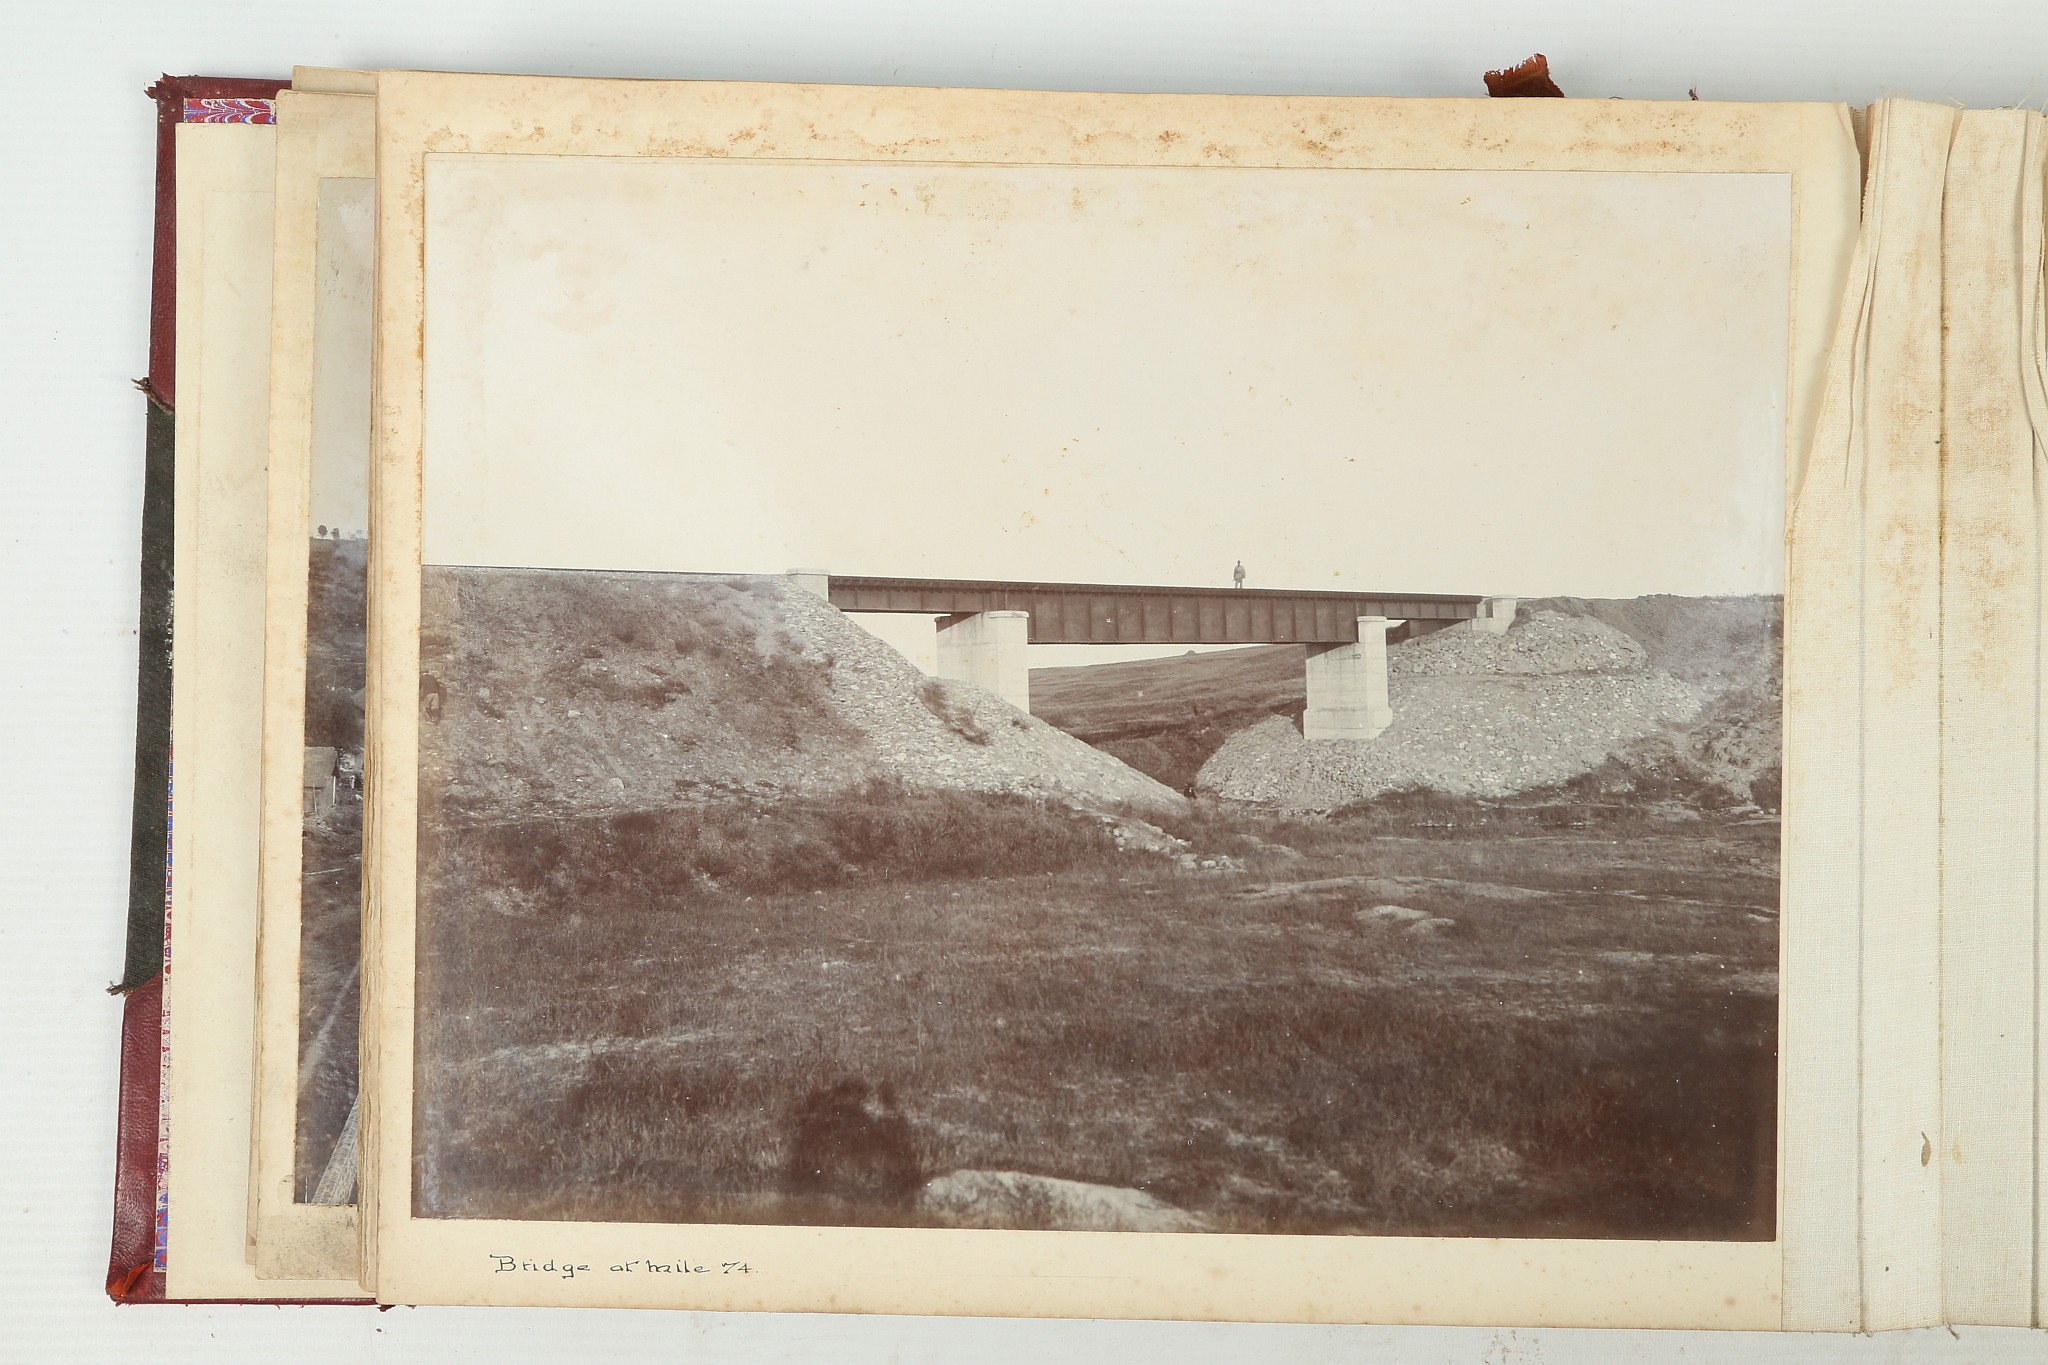 A PHOTOGRAPHIC ALBUM OF THE TIENTSIN-PUKOW RAILWAY - Image 24 of 60